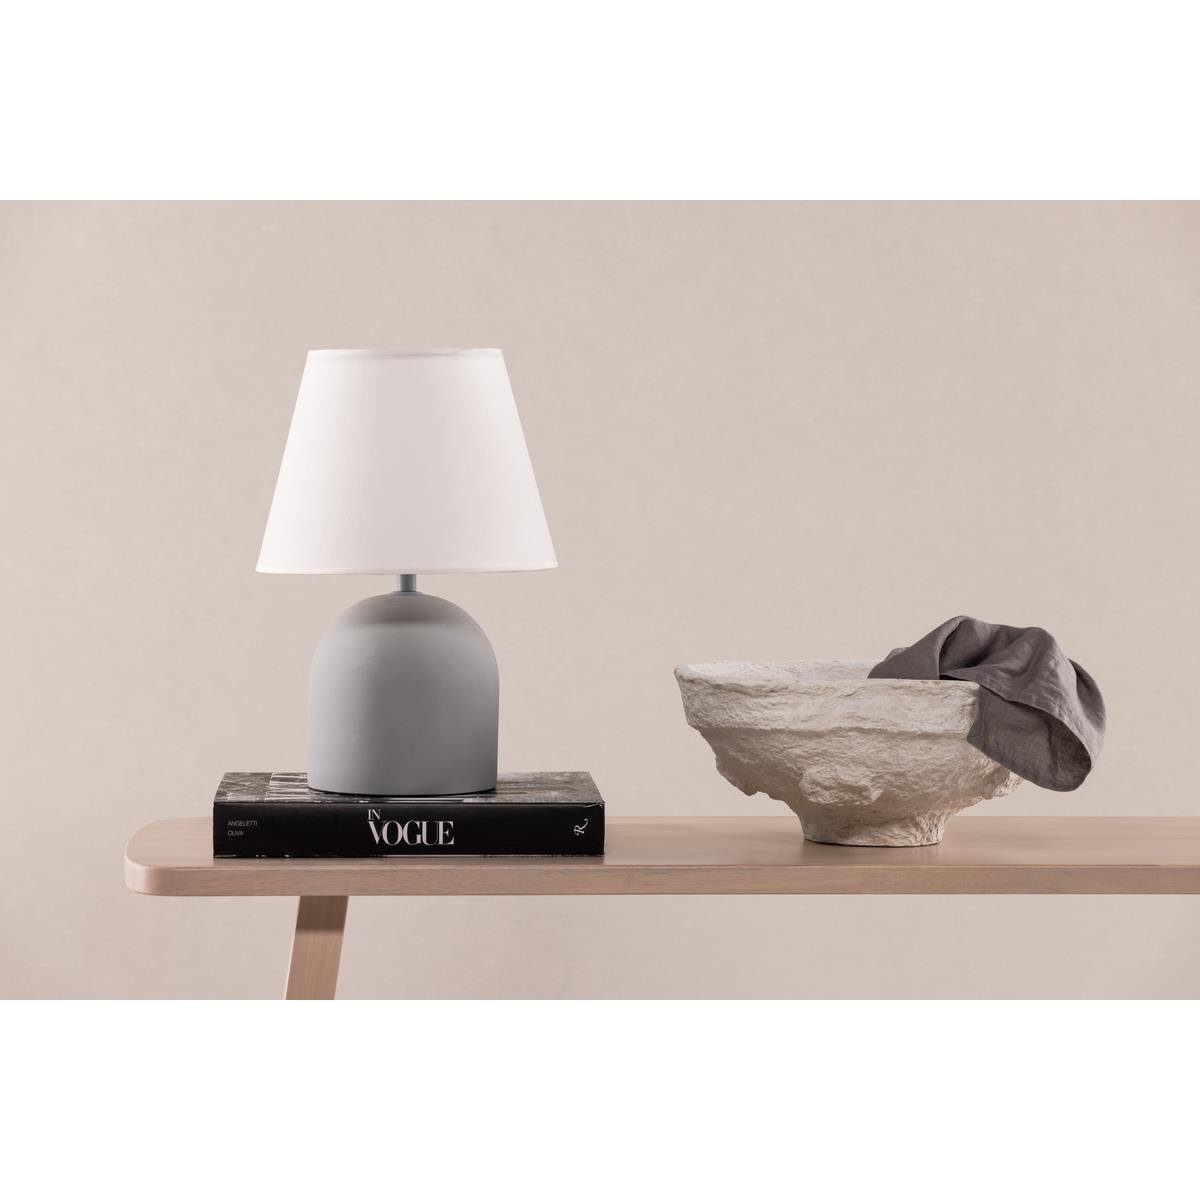 BOURGH Tisch-Tageslichtlampe STYRSÖ Lampe - Nachttischlampe 37cm - Zischlampe in modernem Design, weiss